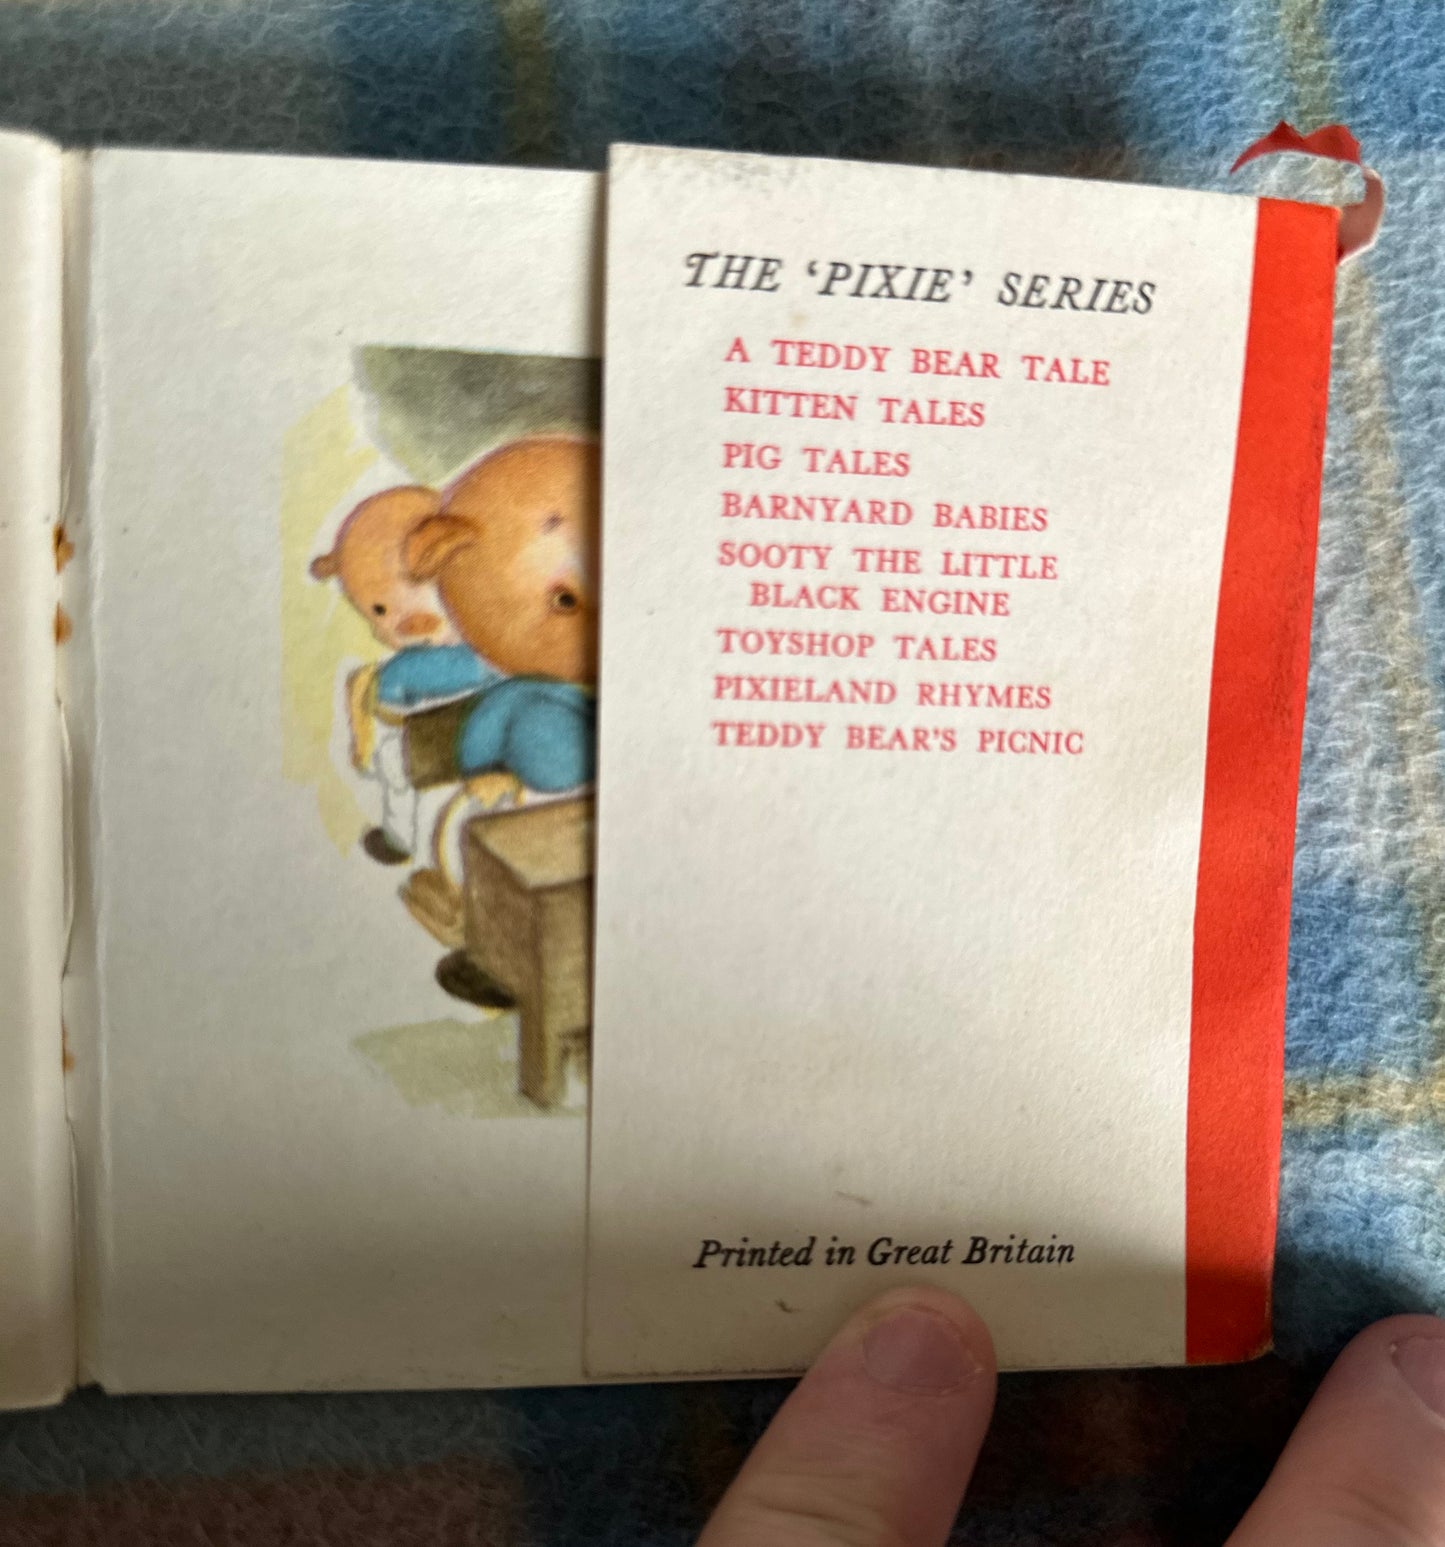 1950 Pig Tales (A Pixie Book) Miriam Dixon(Collins)